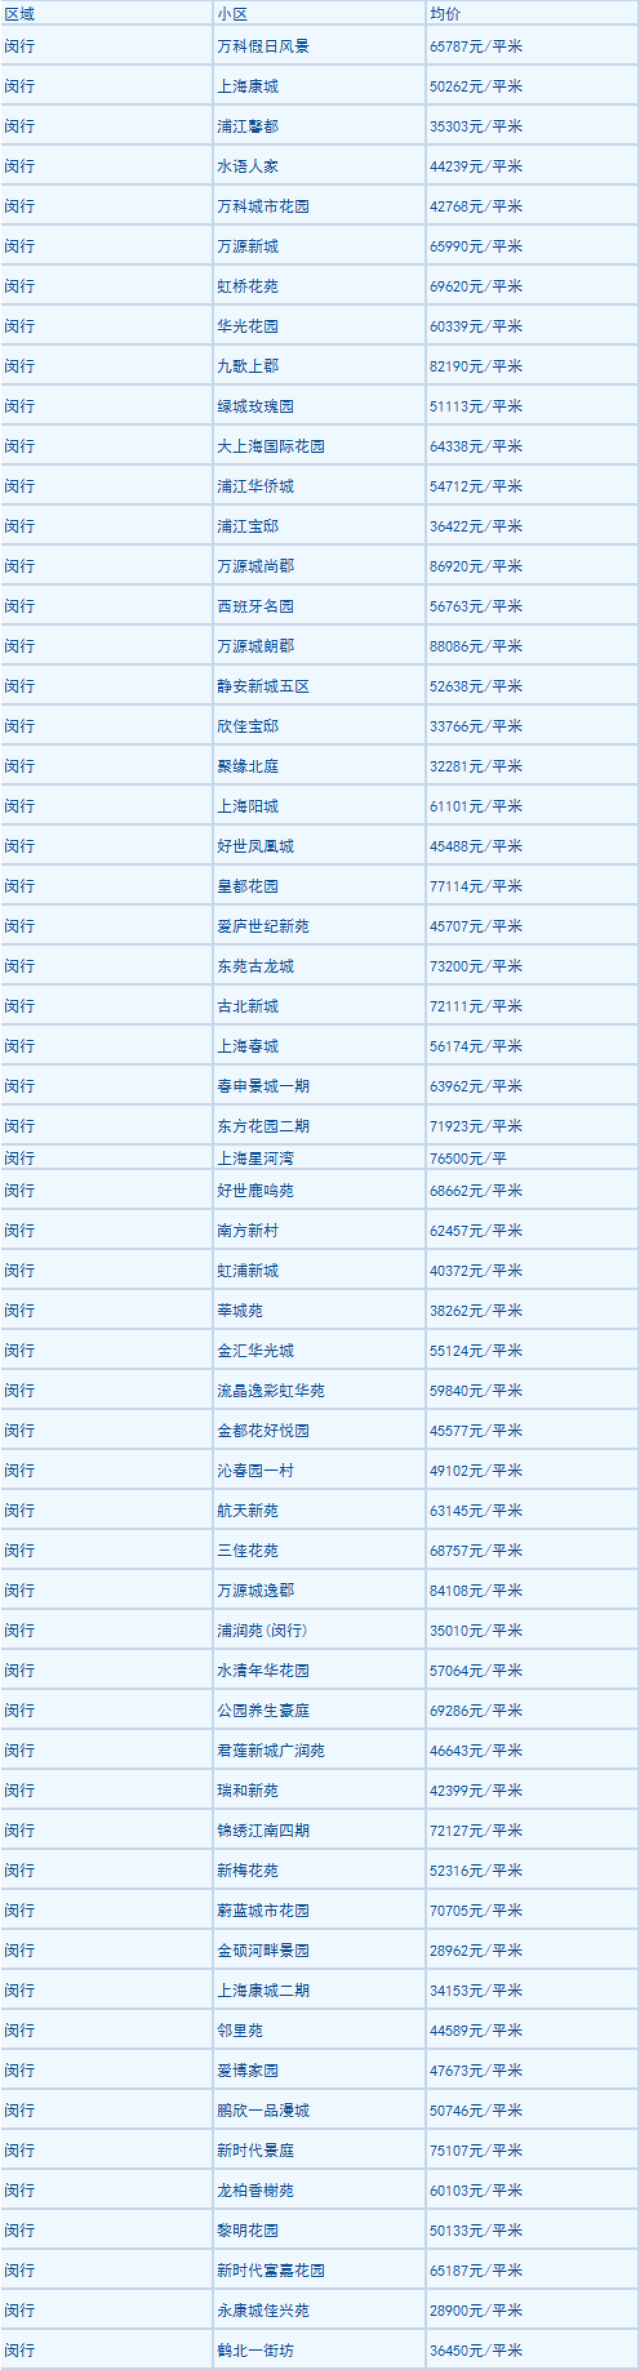 上海房价(上海房价一览表)